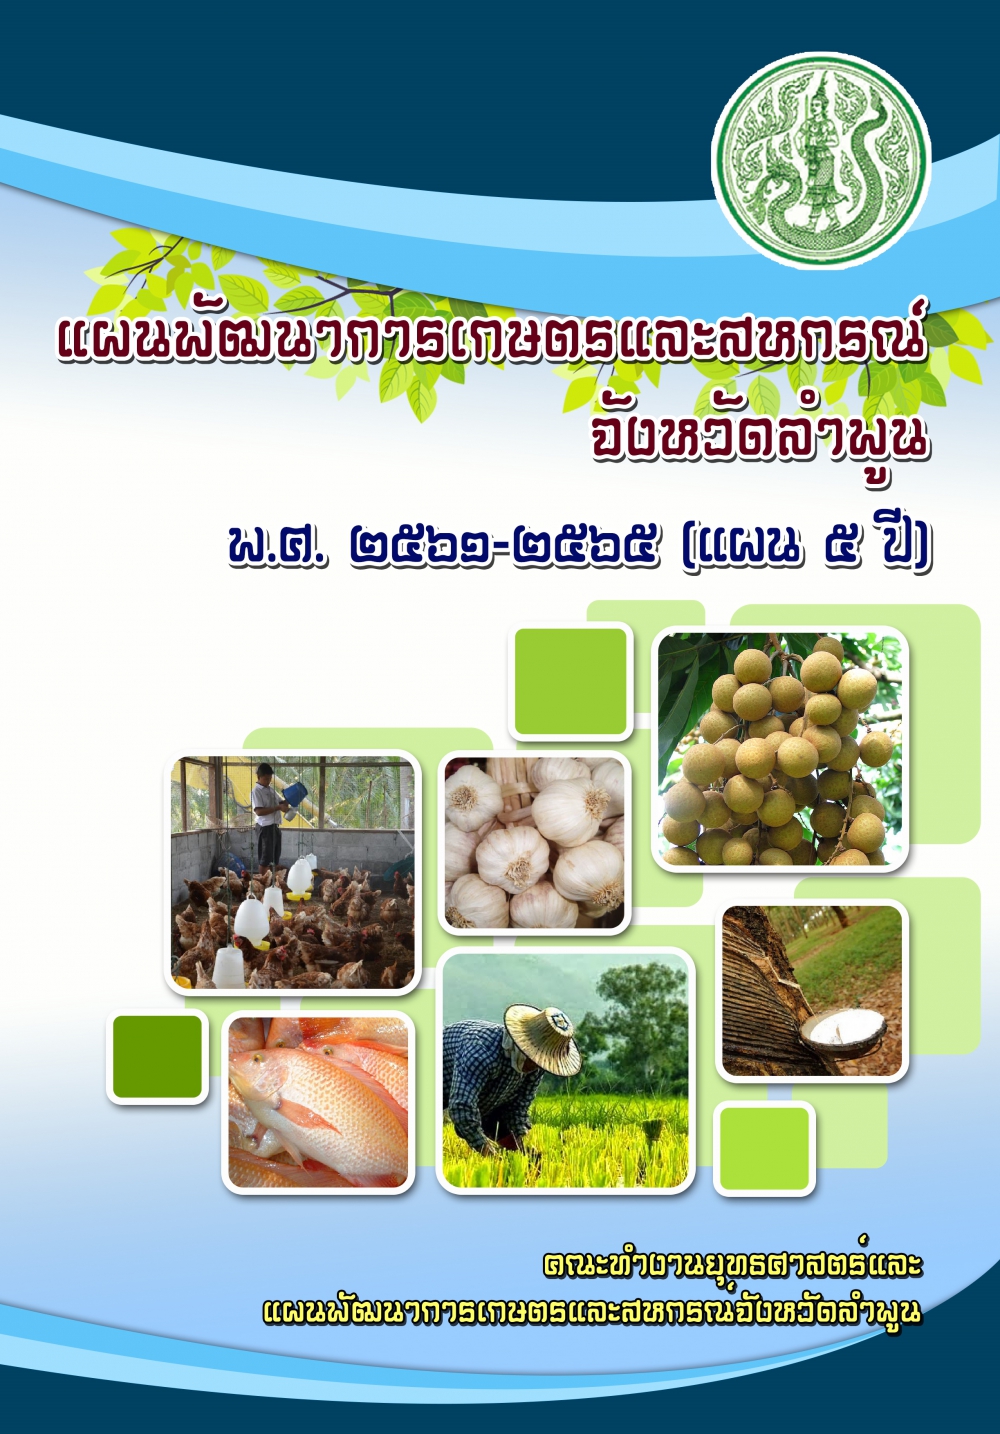 แผนพัฒนาการเกษตรและสหกรณ์ของจังหวัดลาพูน (พ.ศ. 2561 - 2565)